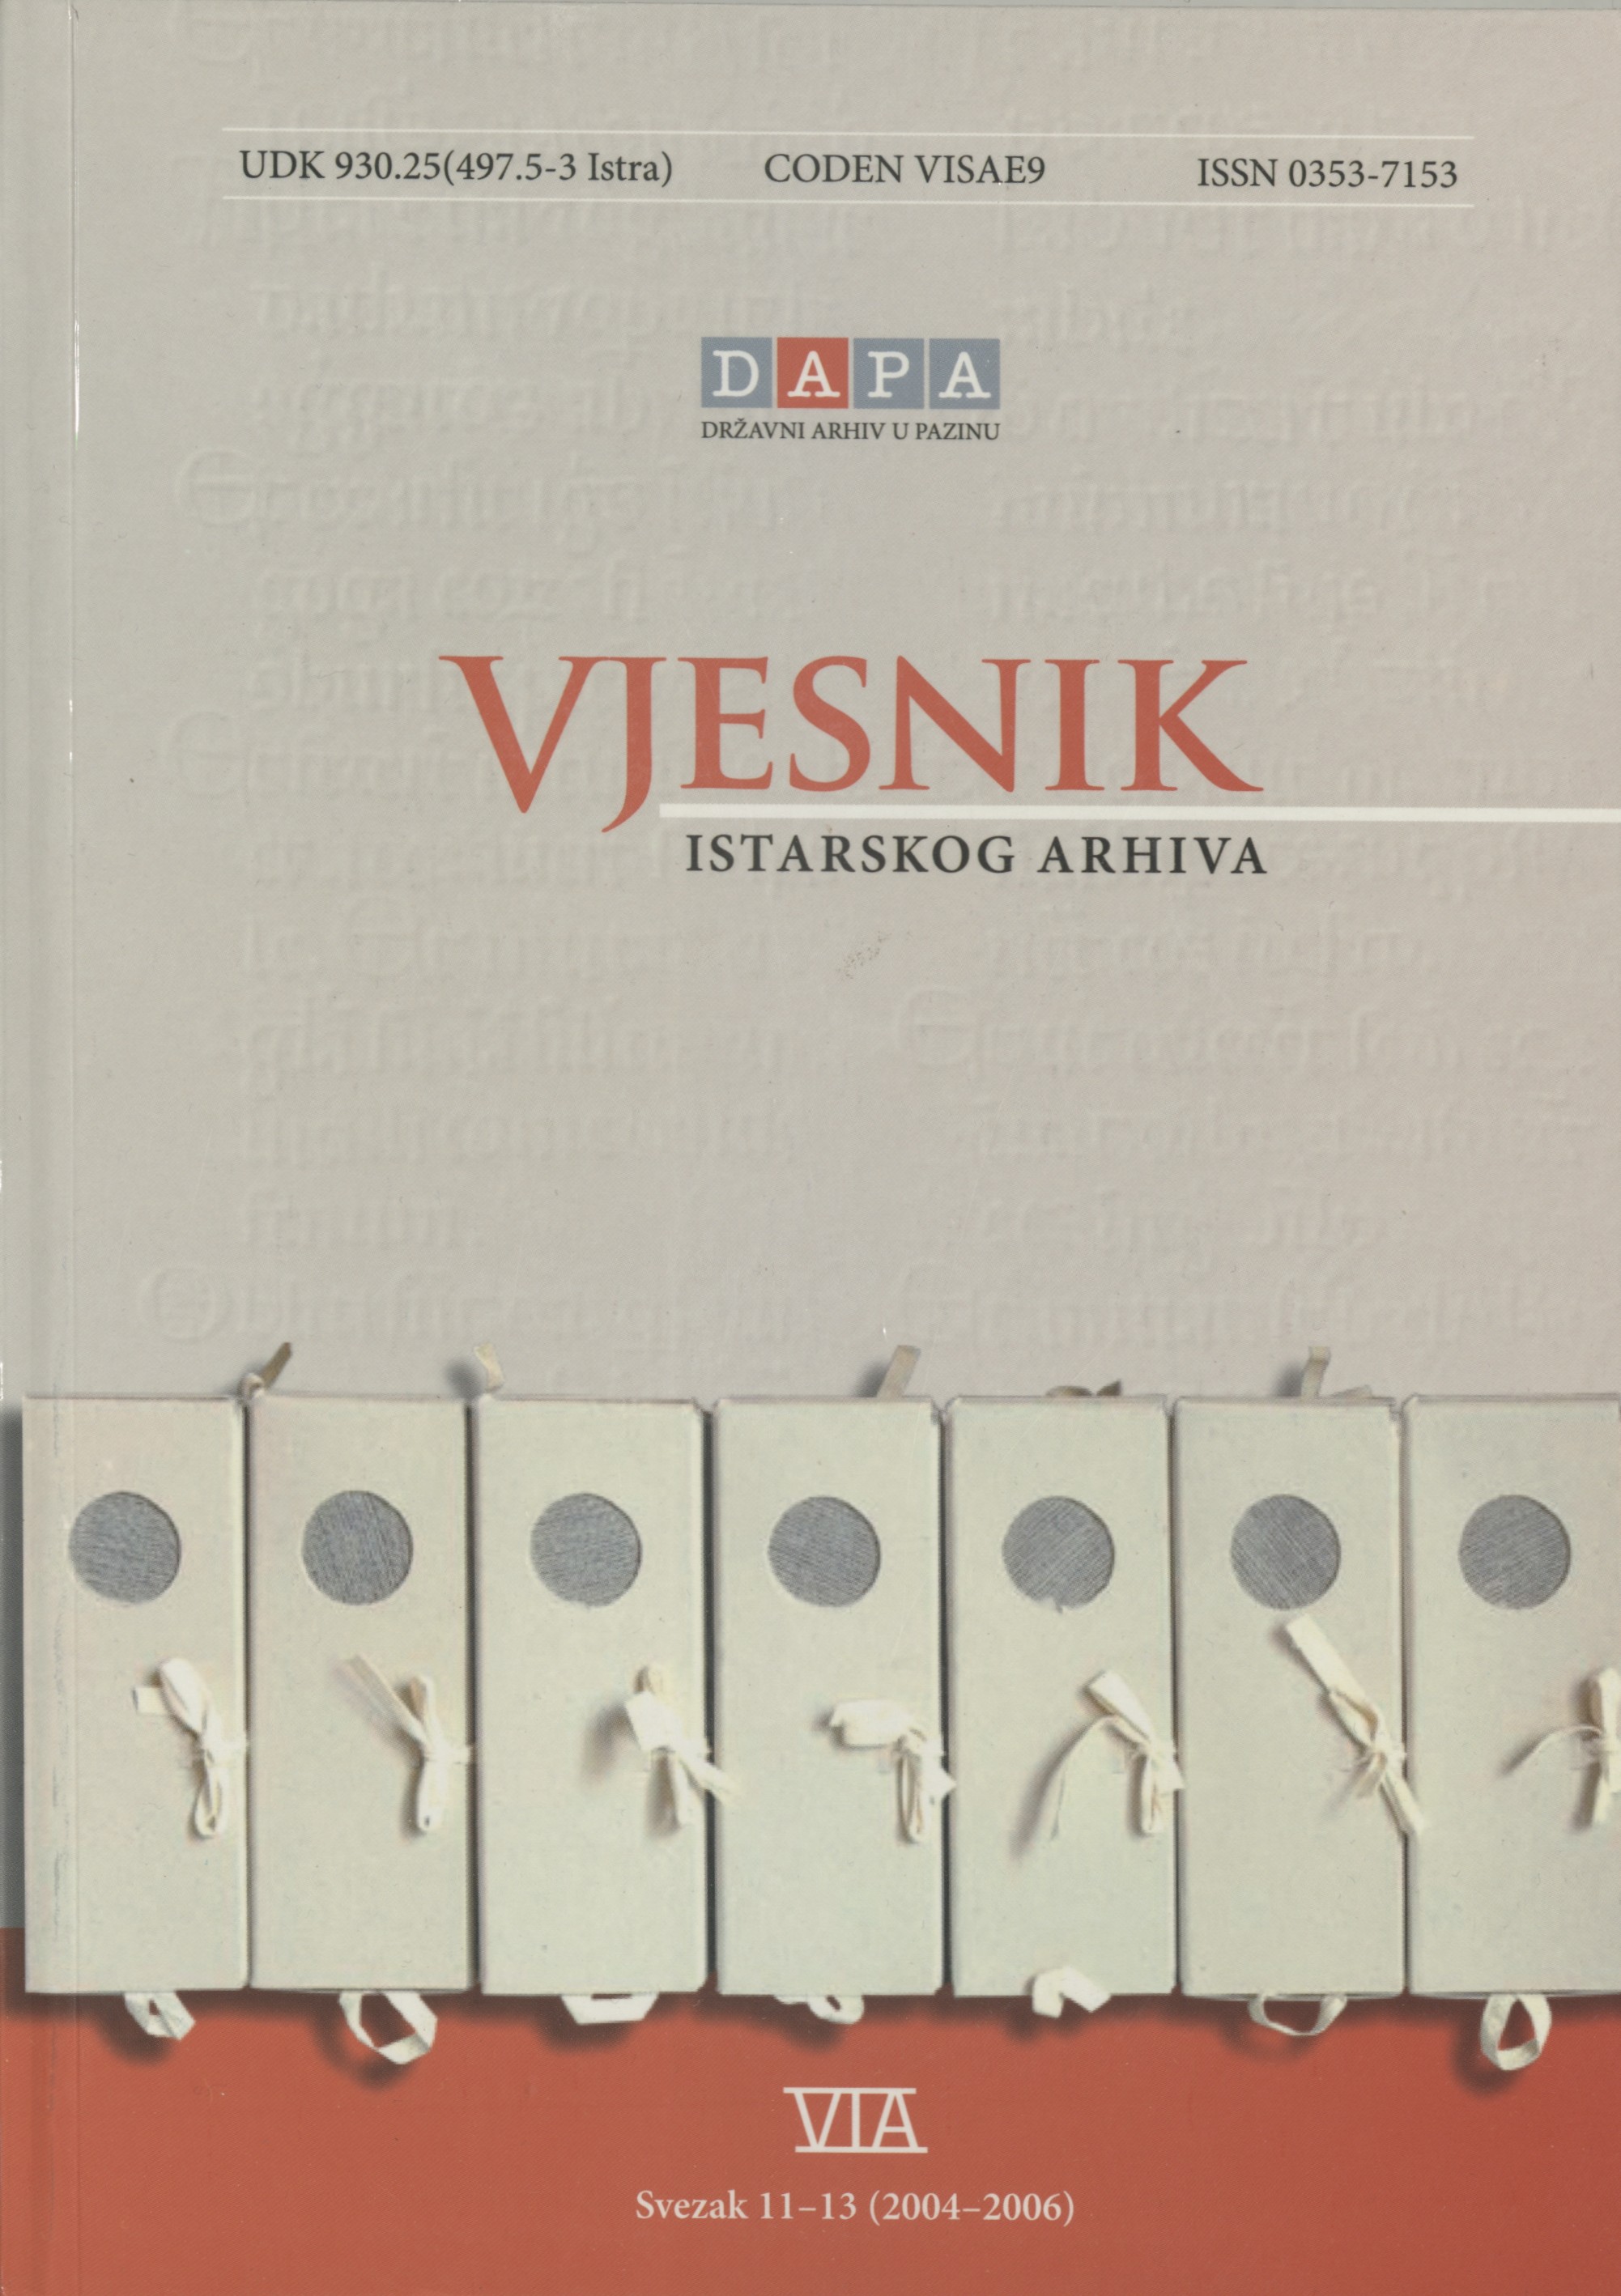 					View Vjesnik istarskog arhiva vol. 11-13 (2004-2006)
				